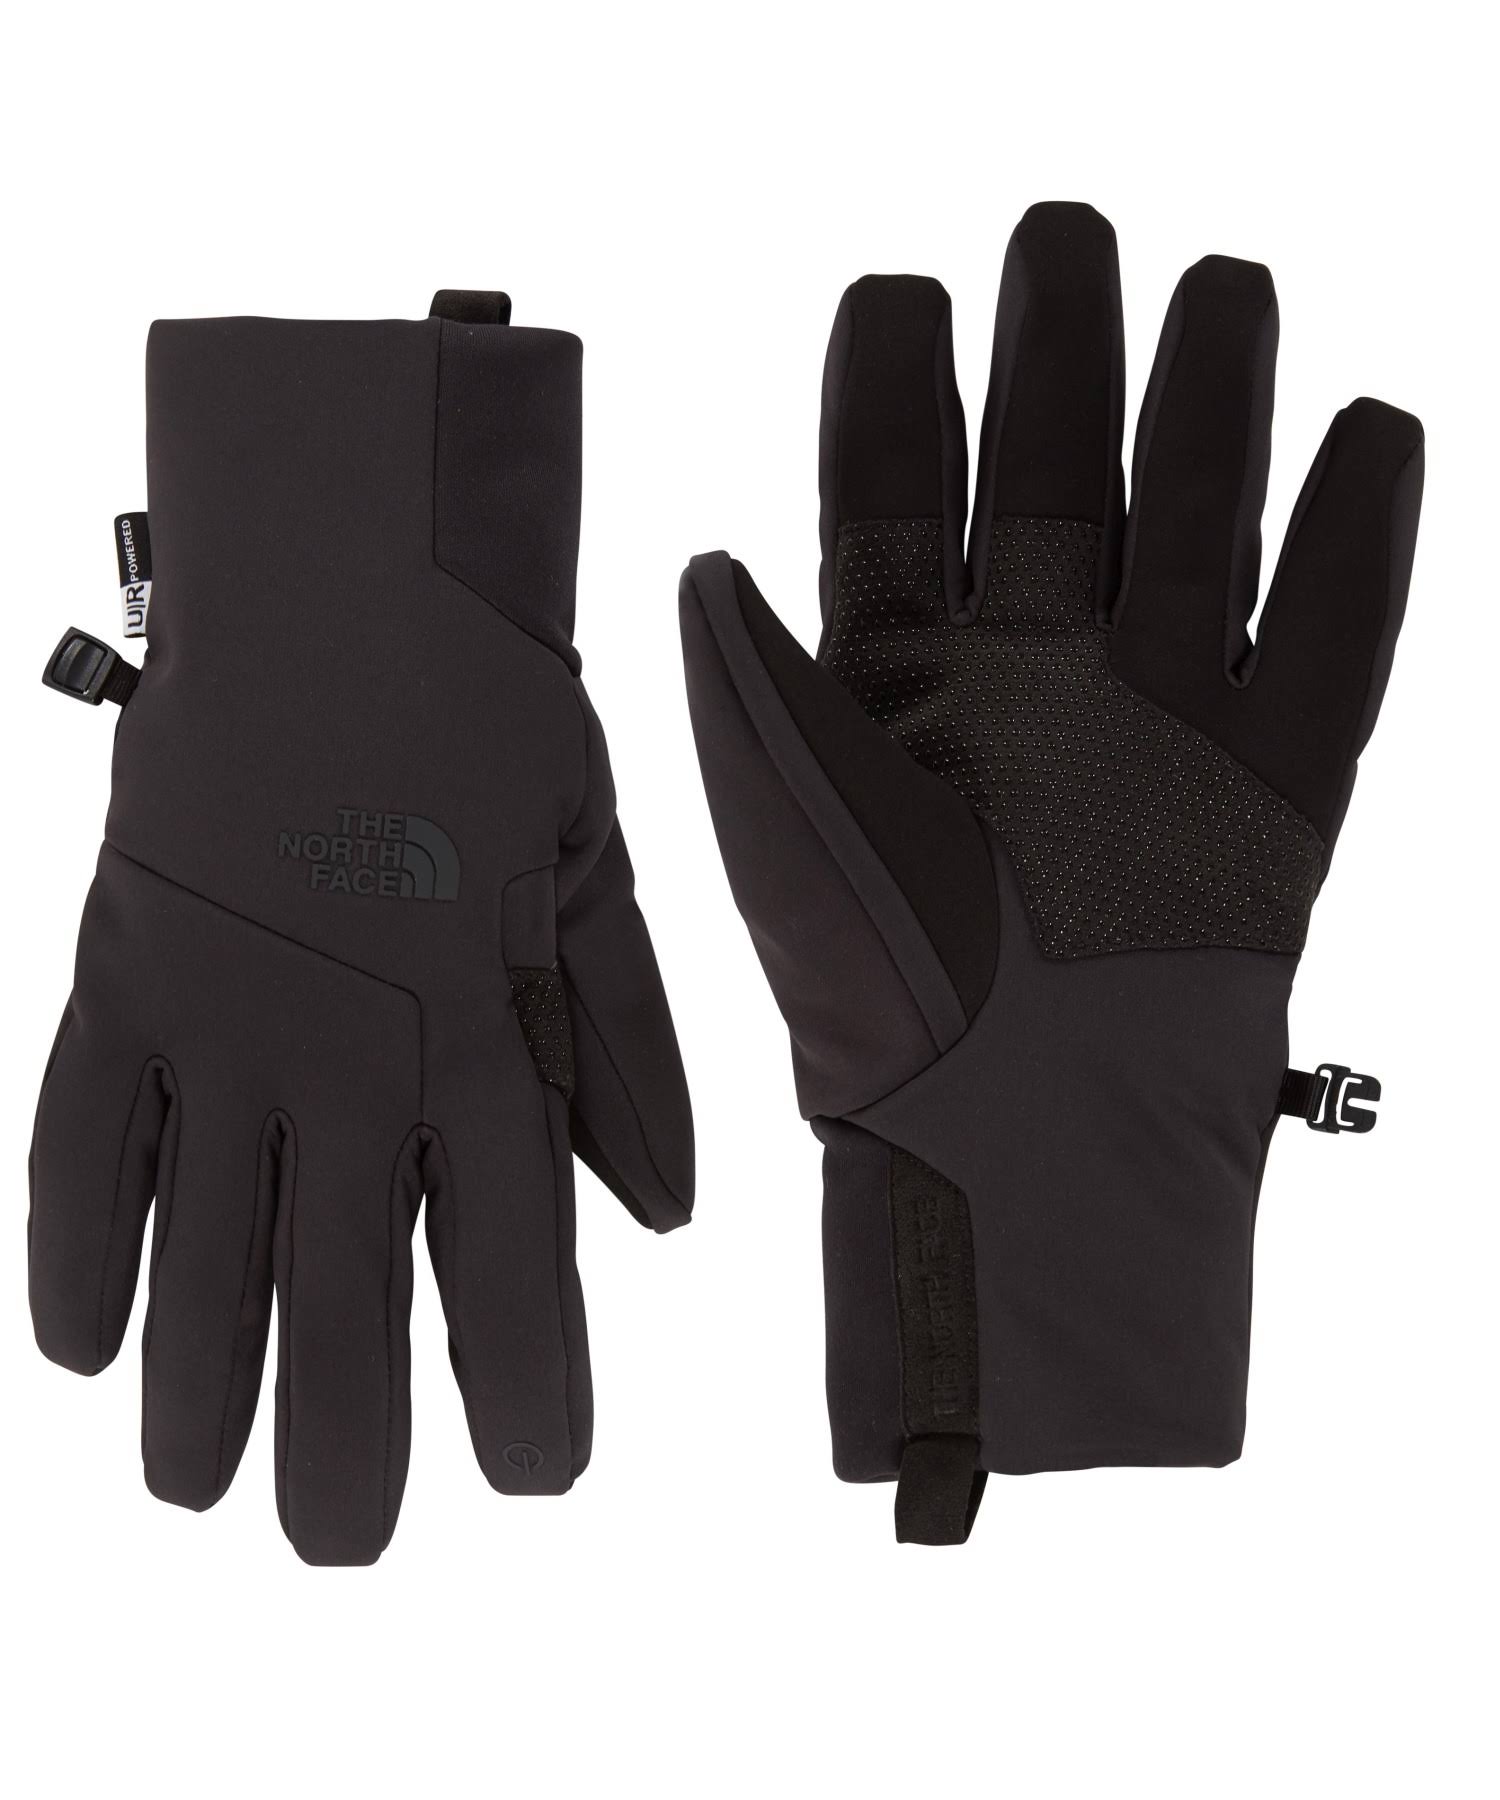 The North Face Men's Apex Etip Gloves - Black, Medium